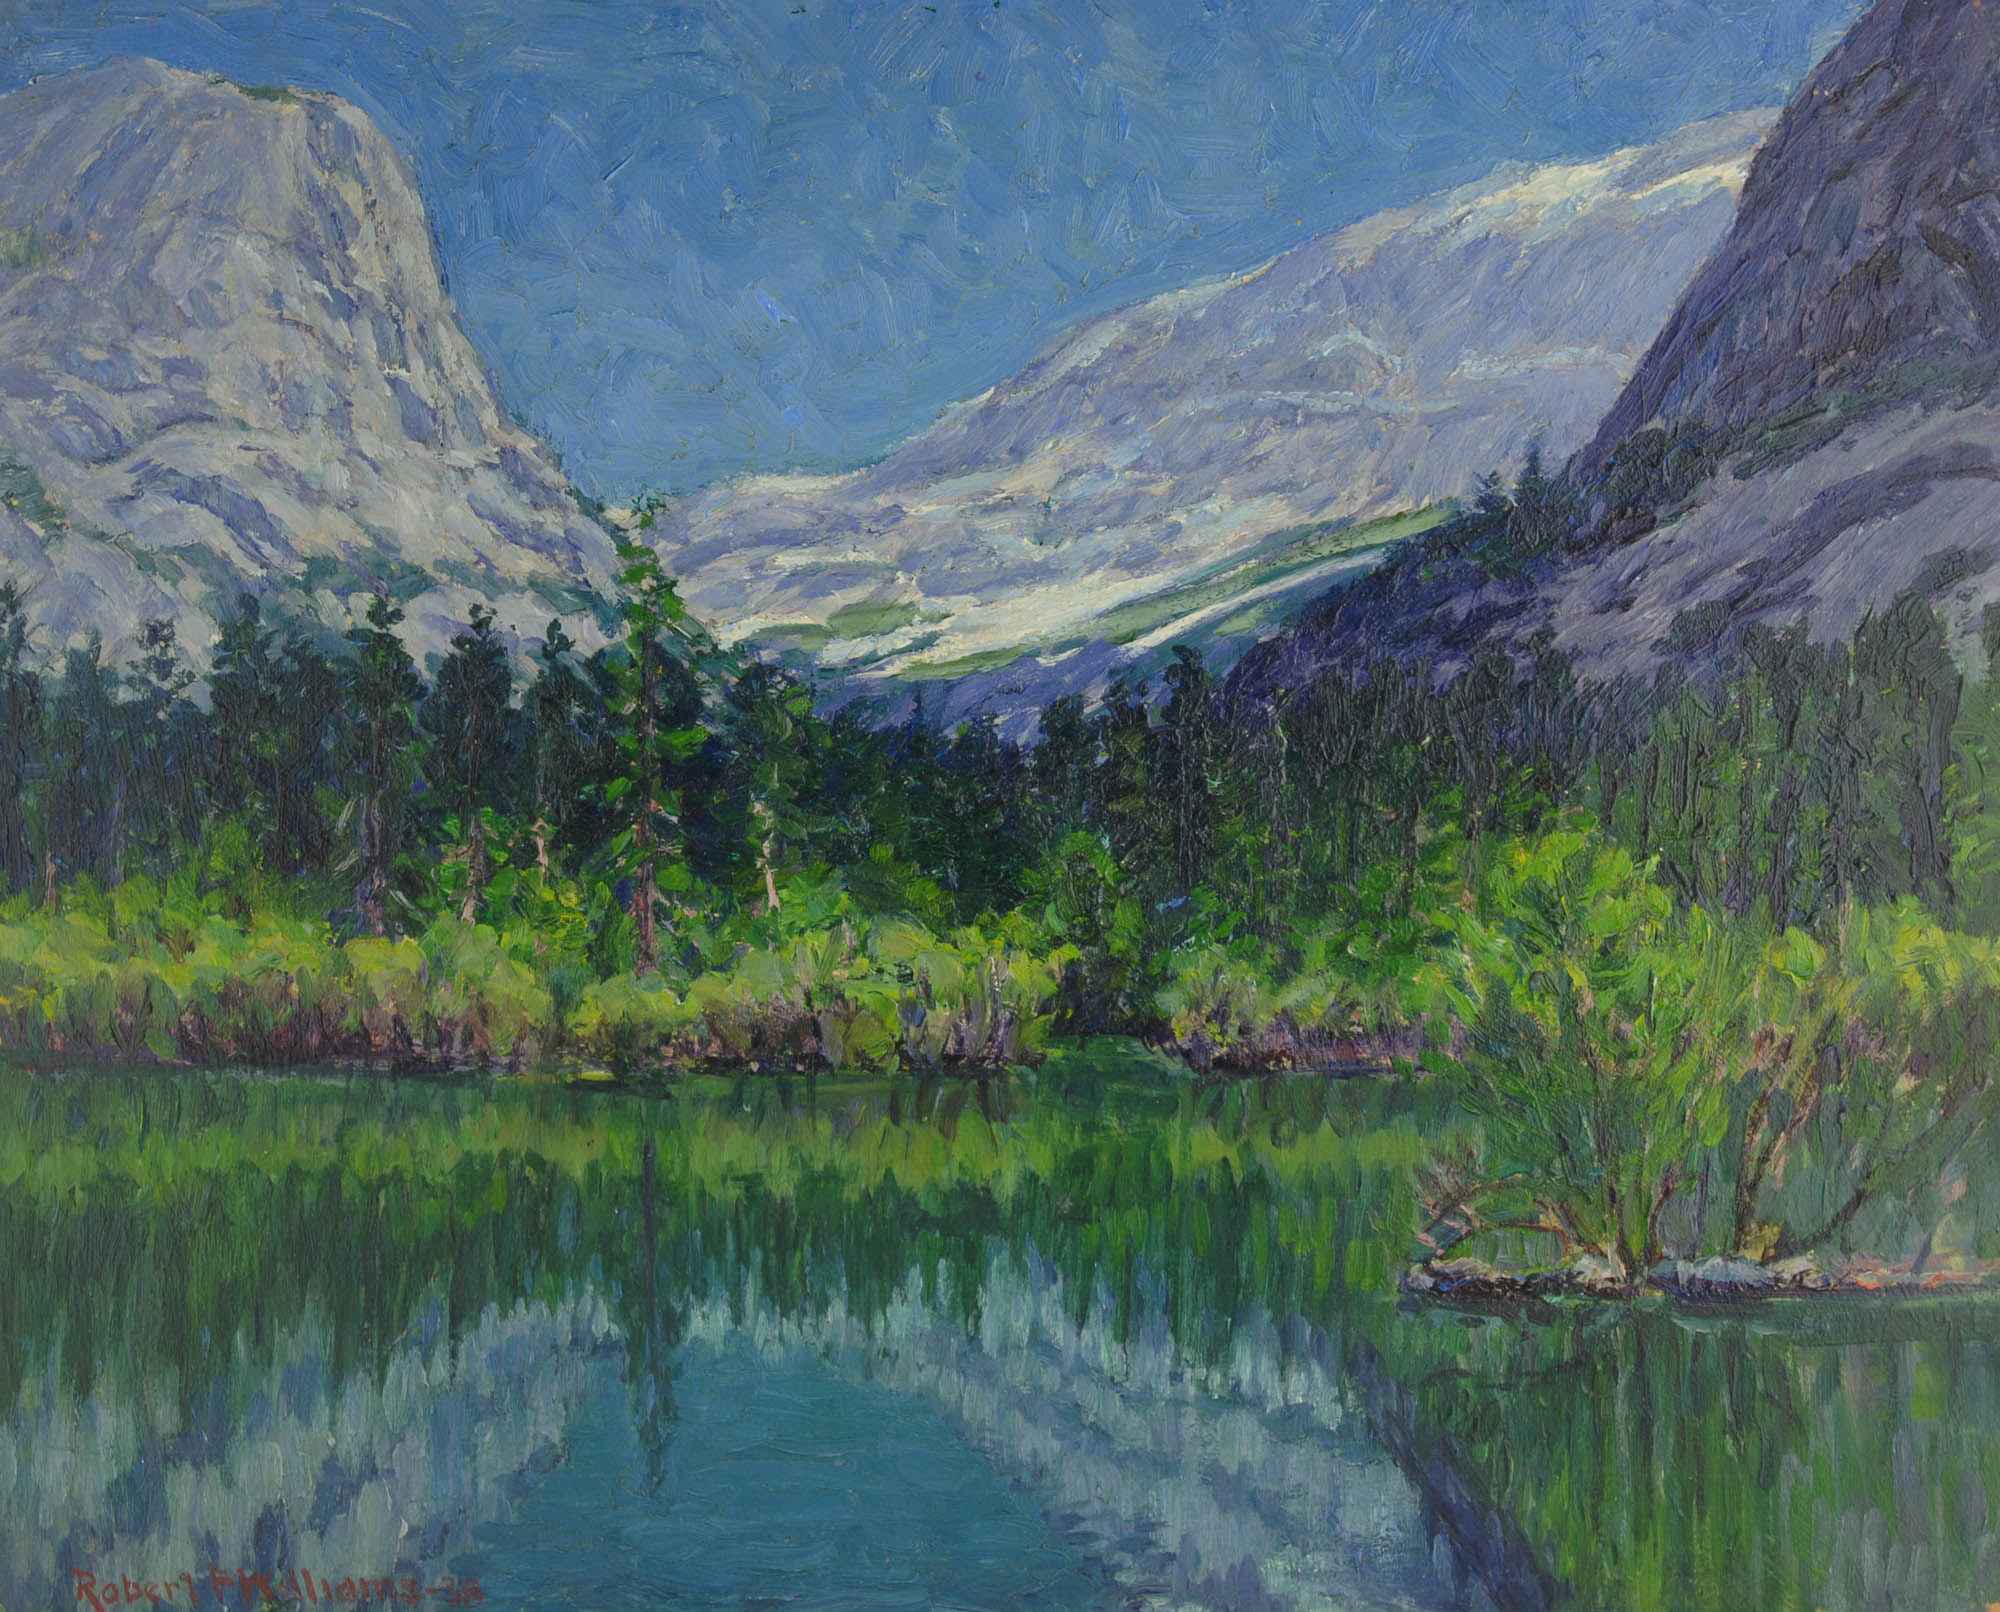 Painting Mirror Lake - Yosemite